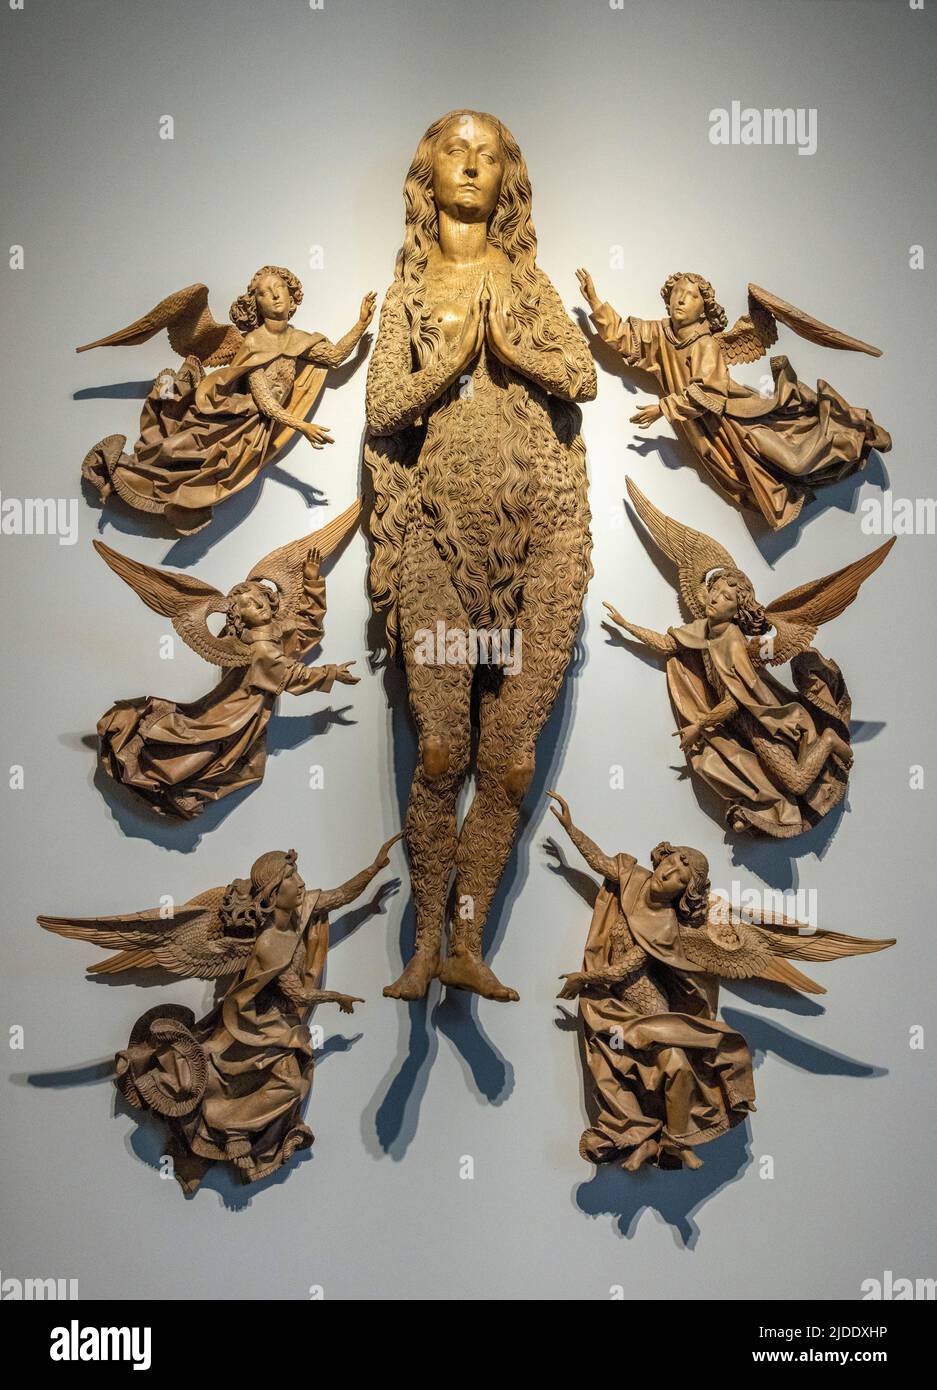 Escultura de madera tallada, Ascensión de Santa María Magdalena, por Tilman Riemenschneider, 1492, Bayerisches Nationalmuseum, Munich, Alemania Foto de stock